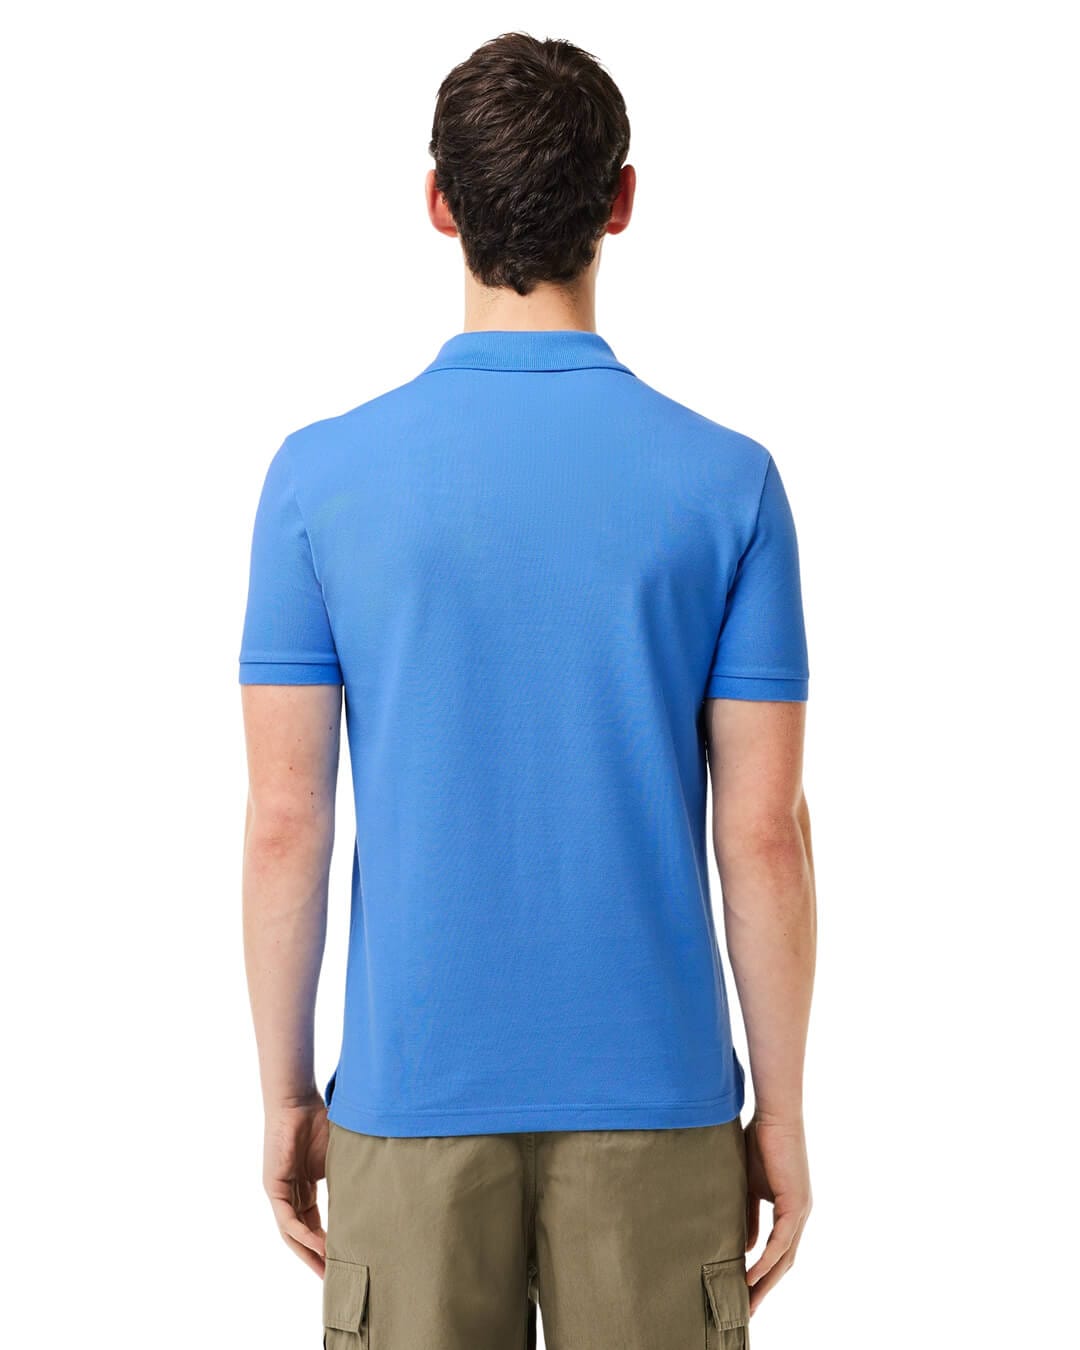 Lacoste Polo Shirts Lacoste Original L.12.12 Slim Fit Petit Piqué Cotton Blue Polo Shirt